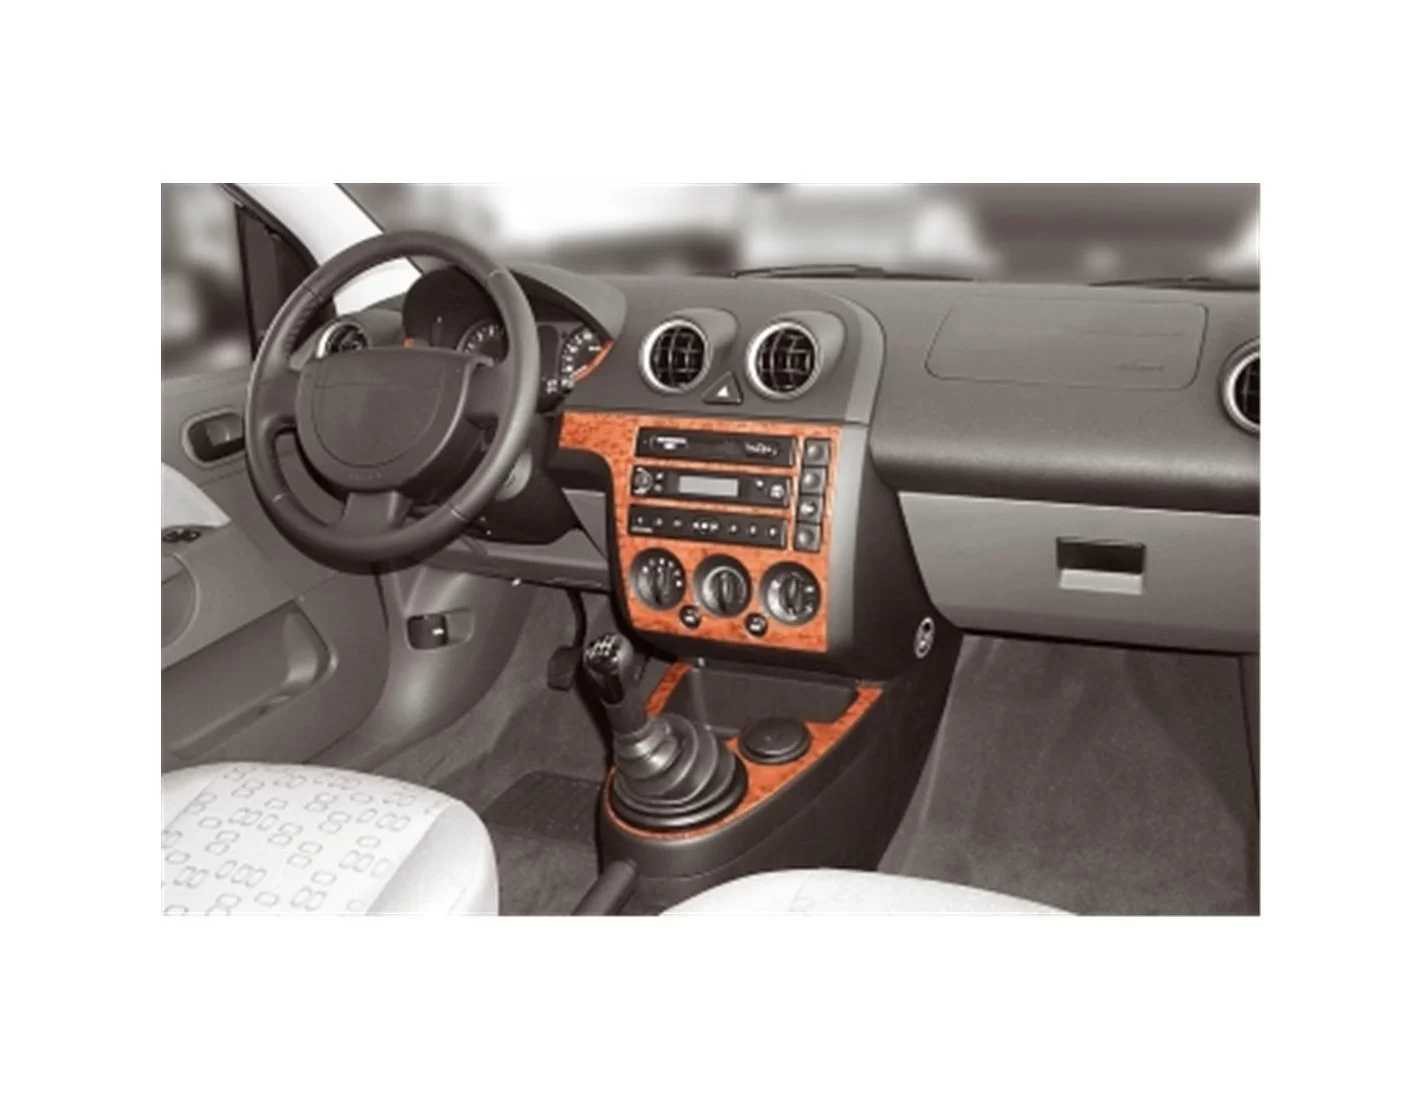 Ford Fiesta 03.02 - 08.05 Mittelkonsole Armaturendekor Cockpit Dekor 7 -Teile